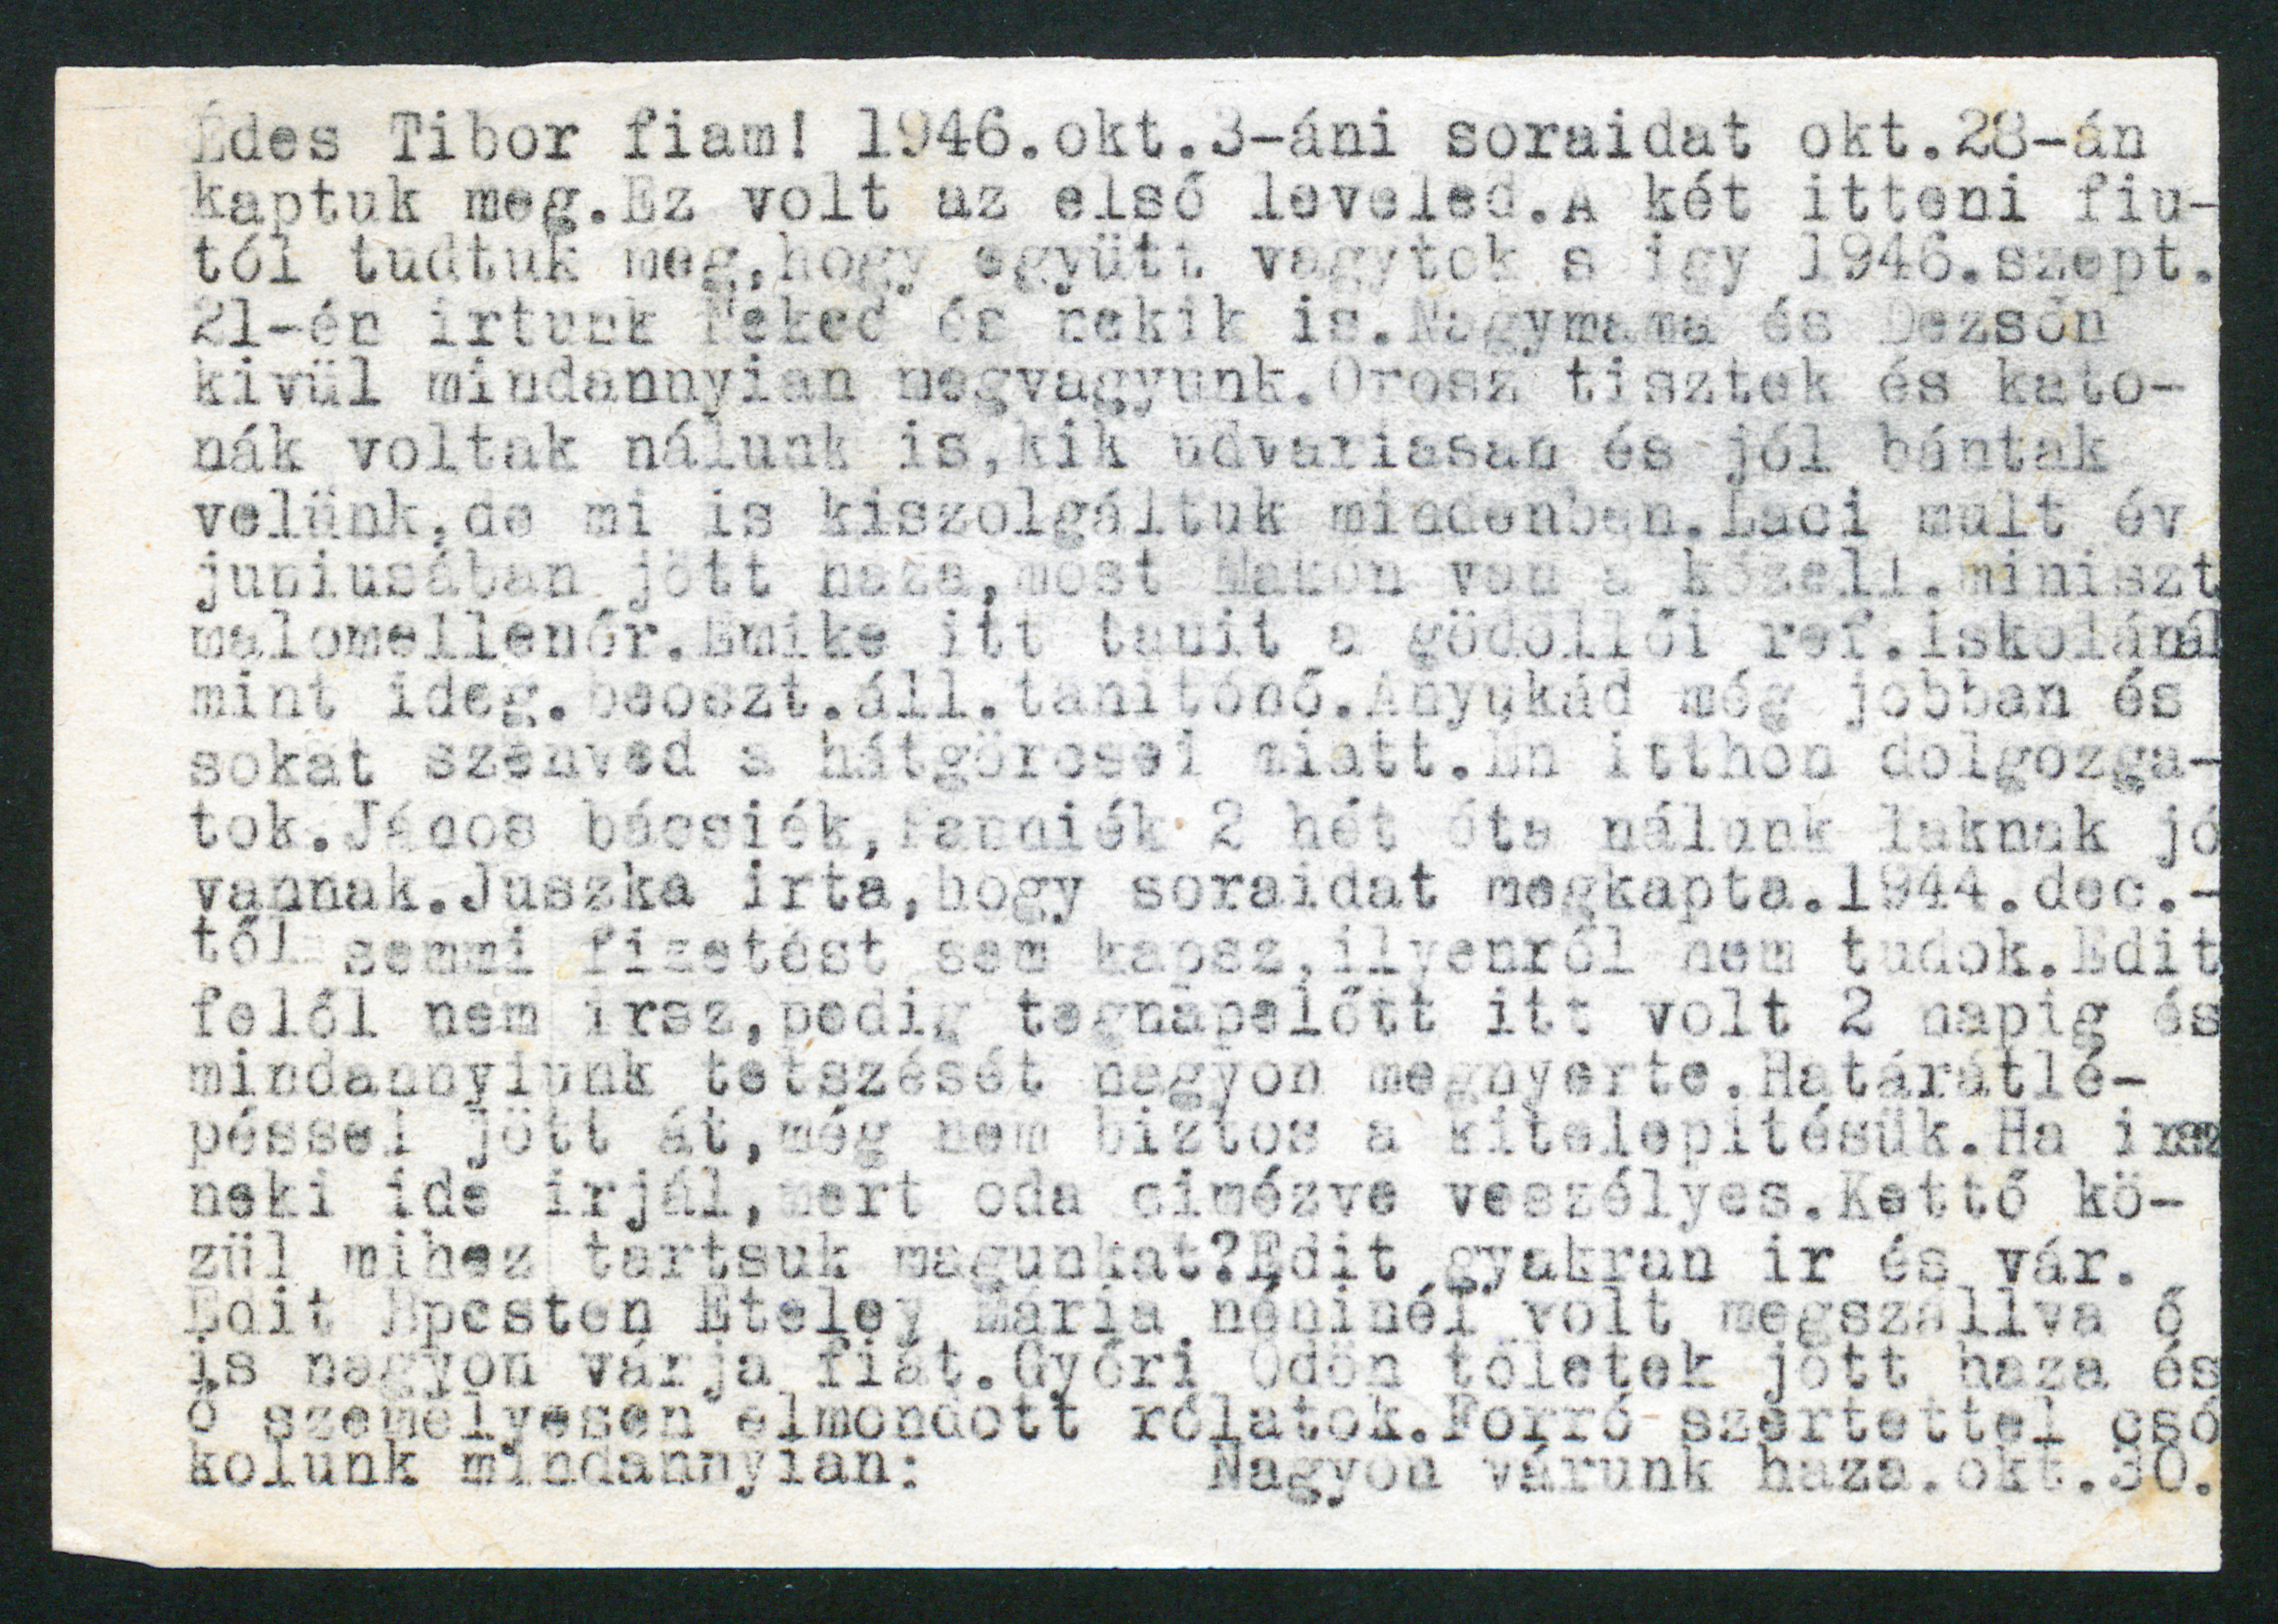 Eördögh Tibor nyugalmazott főjegyző levele fiához, Eördögh Tiborhoz, 1946. október 30.